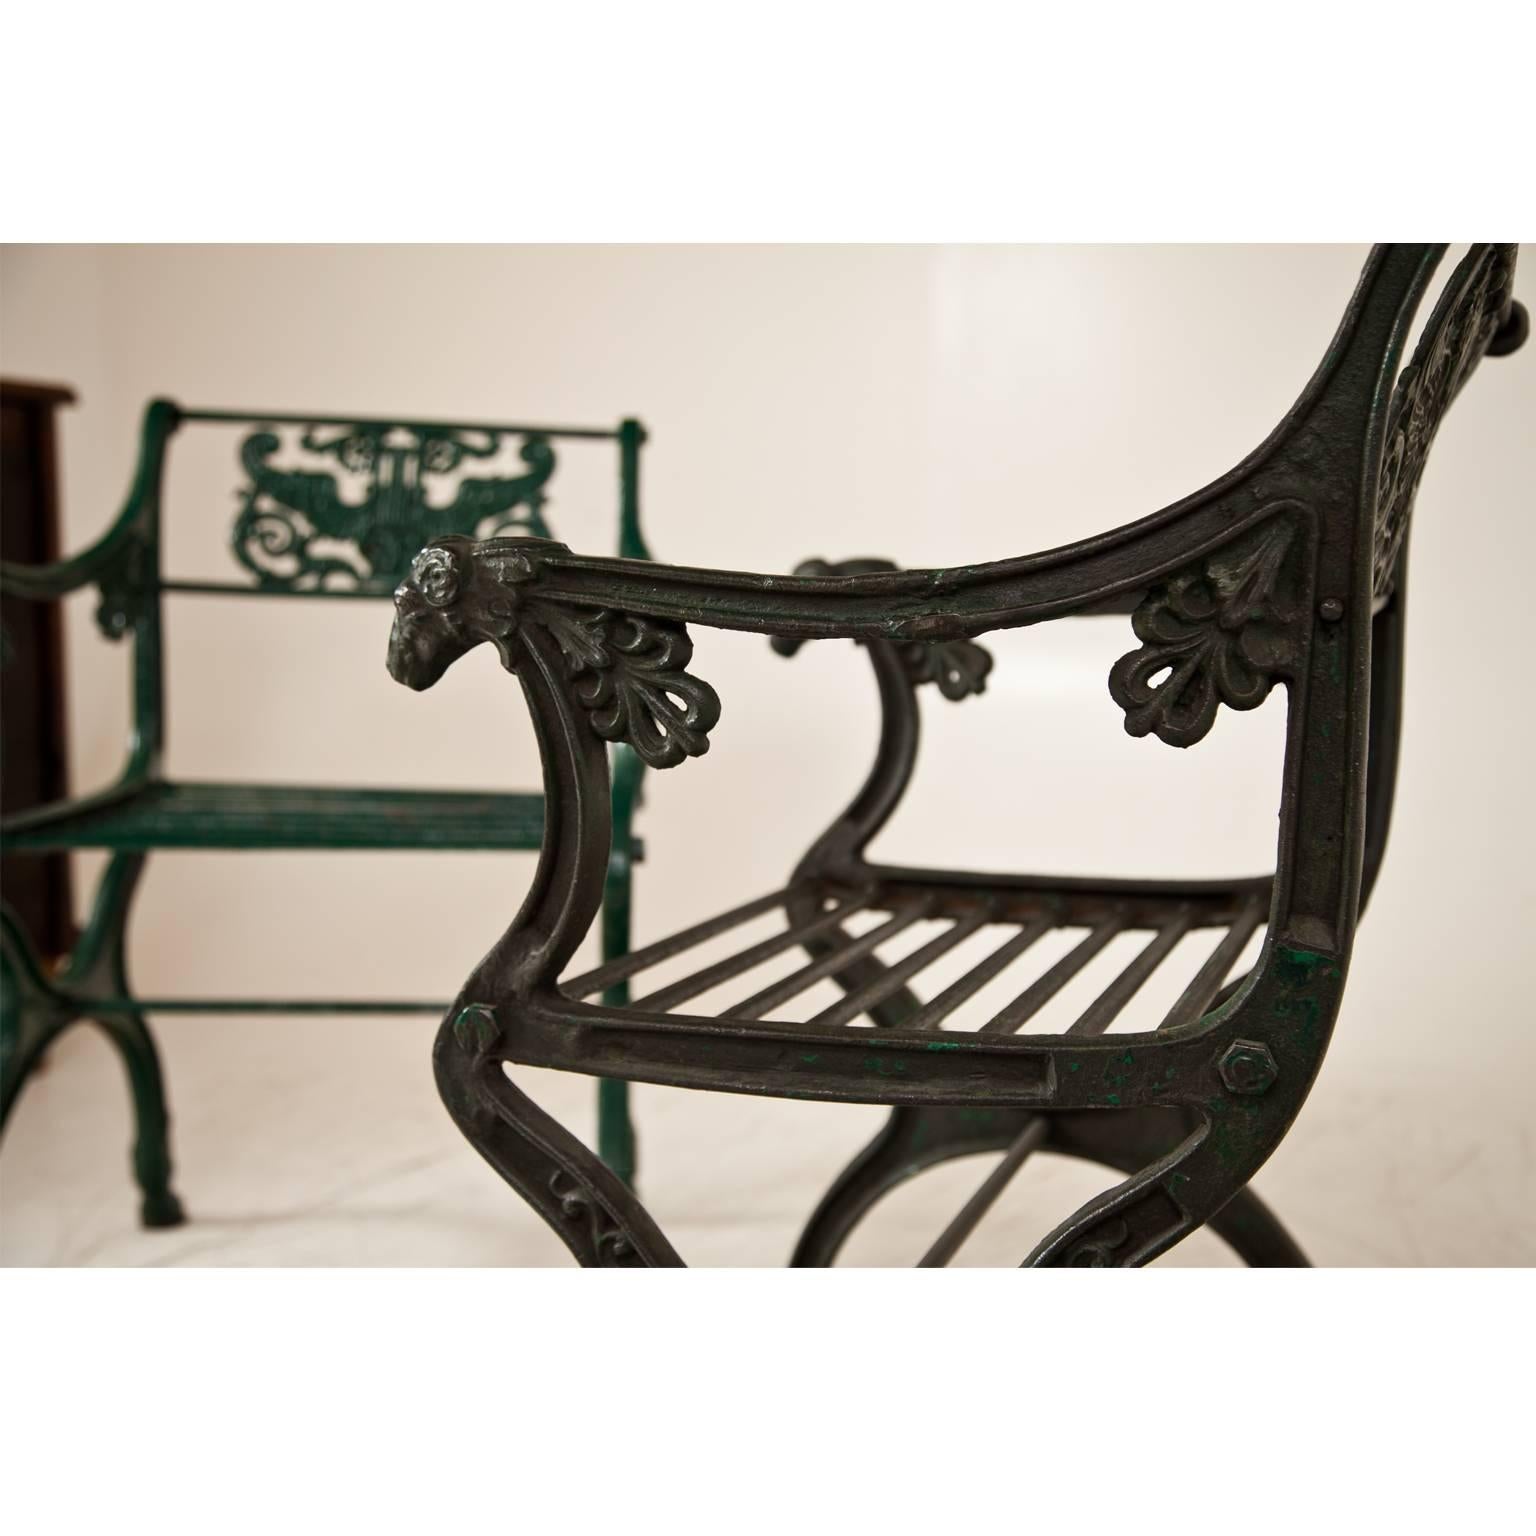 German Cast Iron armchair after a Design by Karl Friedrich Schinkel, Mid-19th Century